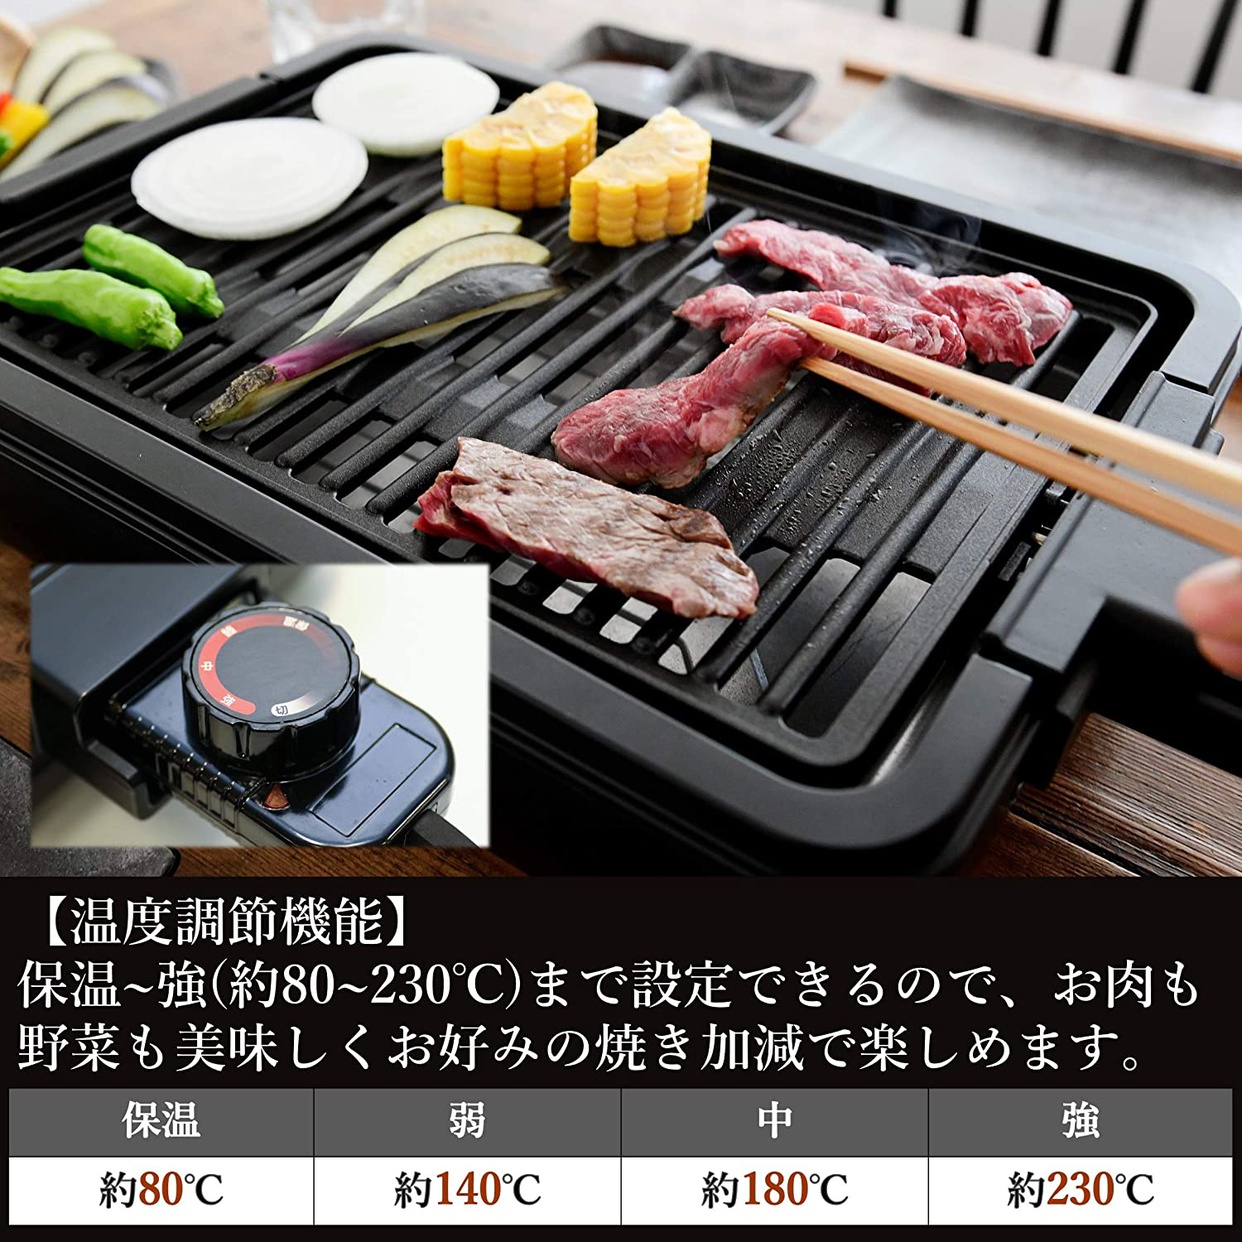 山善(YAMAZEN) 焼き肉グリル YGMA-X100の商品画像6 